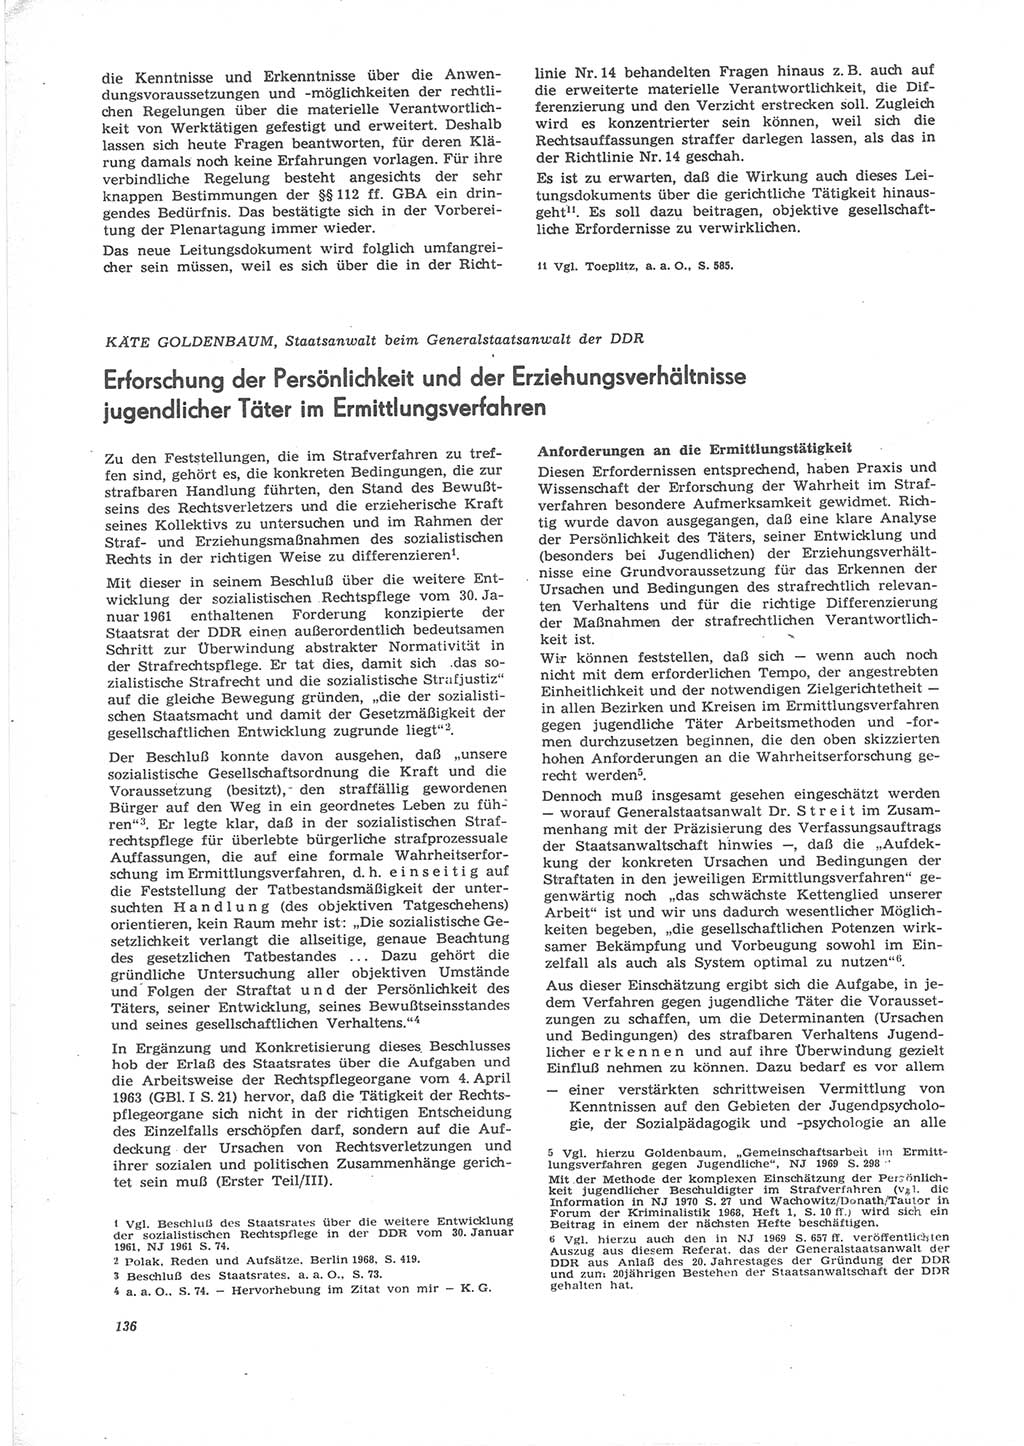 Neue Justiz (NJ), Zeitschrift für Recht und Rechtswissenschaft [Deutsche Demokratische Republik (DDR)], 24. Jahrgang 1970, Seite 136 (NJ DDR 1970, S. 136)